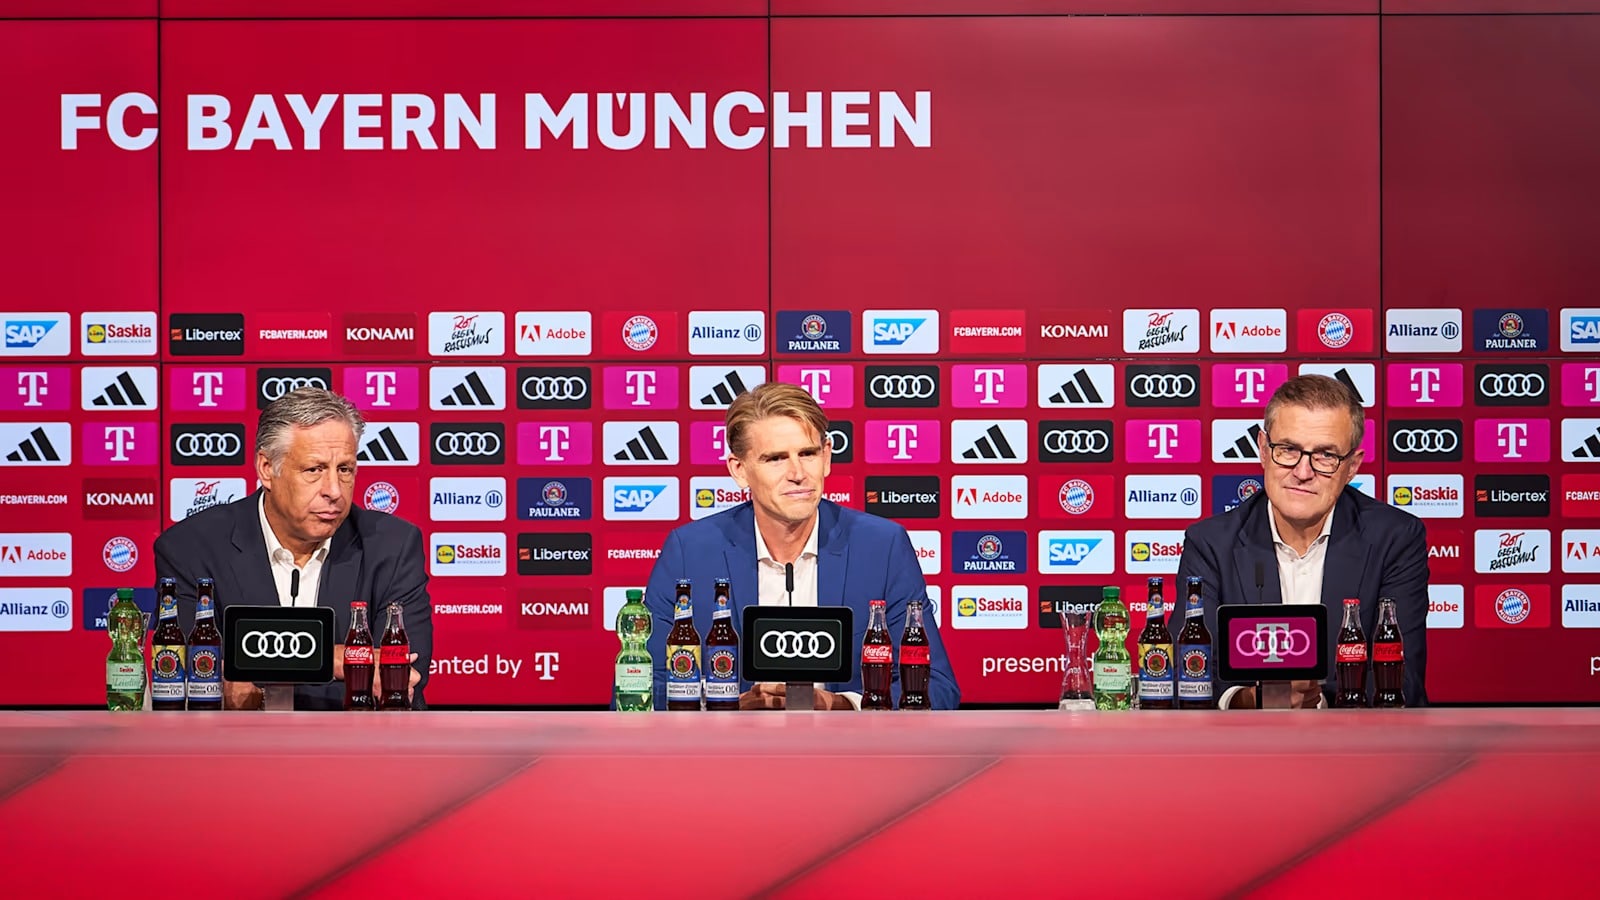 Tirage poules LDC – Le Bayern veut éviter ce club : « Nous les voulons en quart de finale »